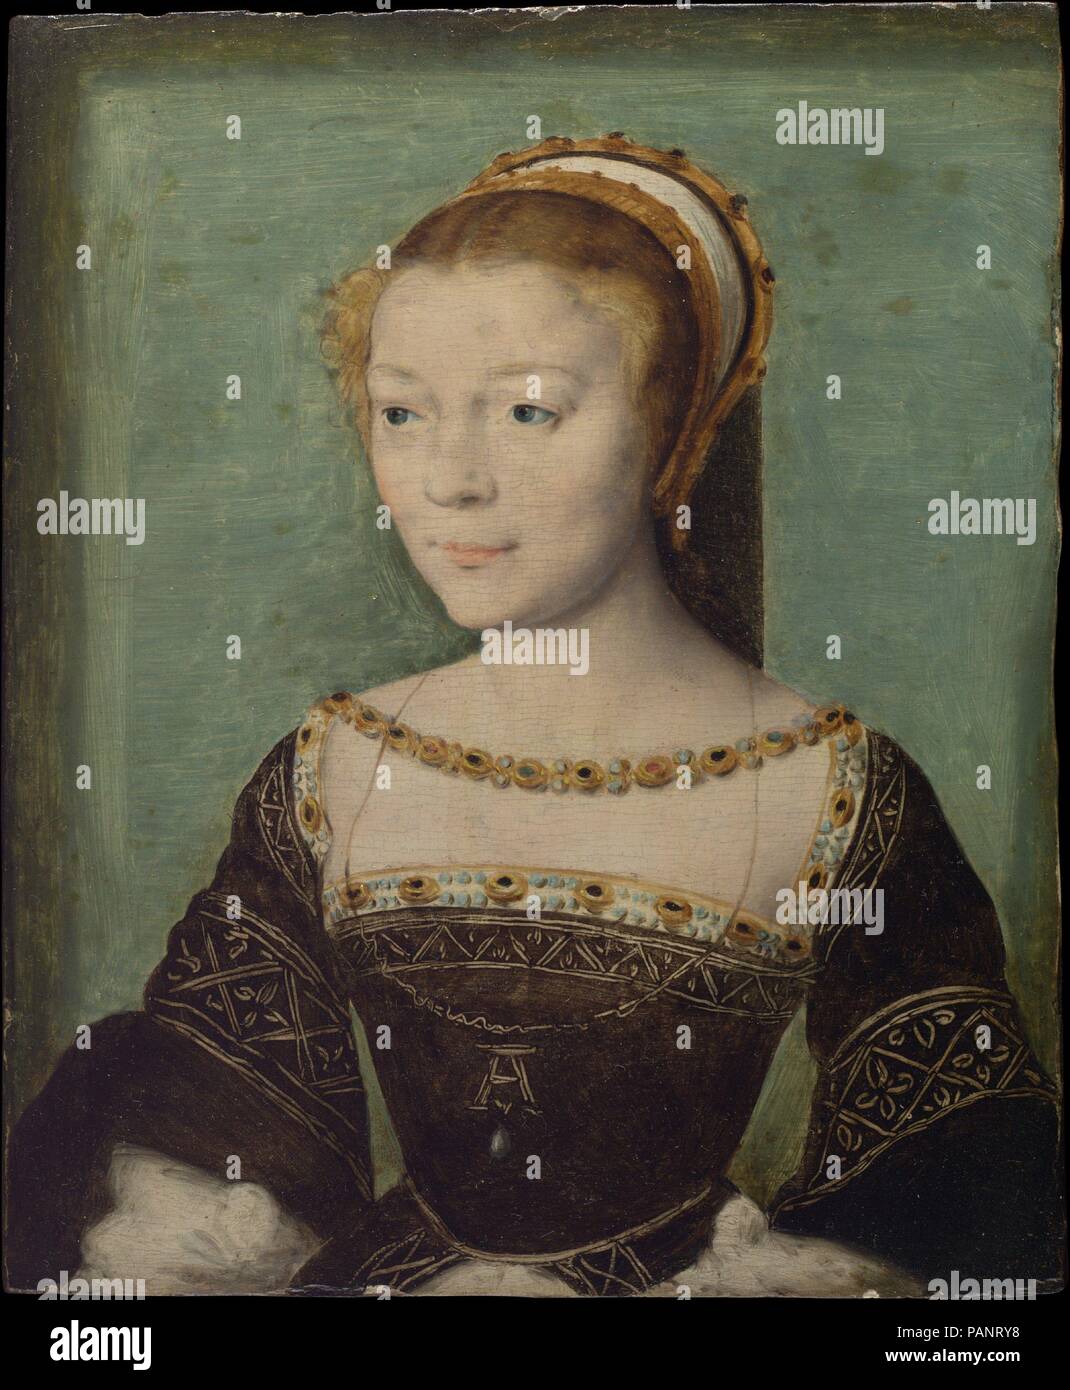 Anne de Pisseleu (1508-1576), Duchesse d'Étampes. Artista: attribuito a Corneille de Lyon (Netherlandish, l'Aia, attivo dal 1533-1575 morì di Lione). Dimensioni: 7 x 5 5/8 in. (17,8 x 14,3 cm). Data: ca. 1535-40. Rinomato per la sua brillantezza e bellezza, Anne de Pisseleu era amante di Francesco I. ella è stata introdotta al re a corte nel 1526 quando aveva diciassette anni. Dopo la sua morte nel 1547, è stata licenziata dalla corte dalla padrona di successo (Re Enrico II), e morì nell'oscurità. Qui indossa una collana in oro e un ciondolo con la sua iniziale 'A' e una perla. Museo: Metropoli Foto Stock